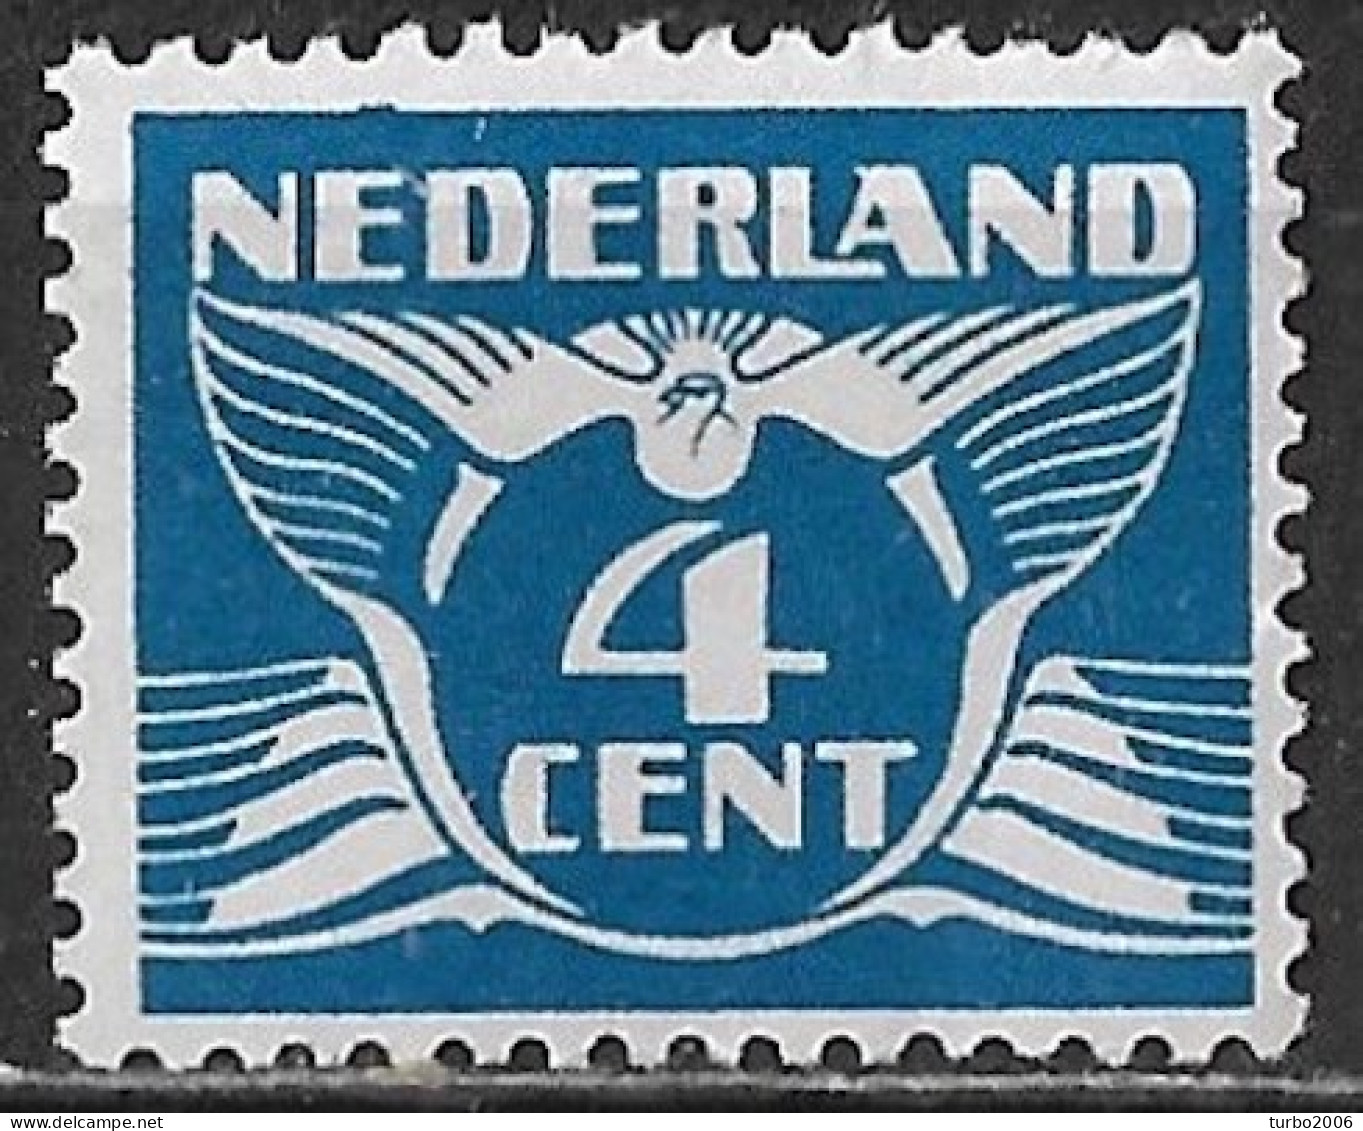 Plaatfout Blauwe Bobbel Boven De 1e E Van NEderland In 1924-1925 Vliegende Duif 4 Ct Blauw Z. WM NVPH 148 PM 8 Postfis - Errors & Oddities